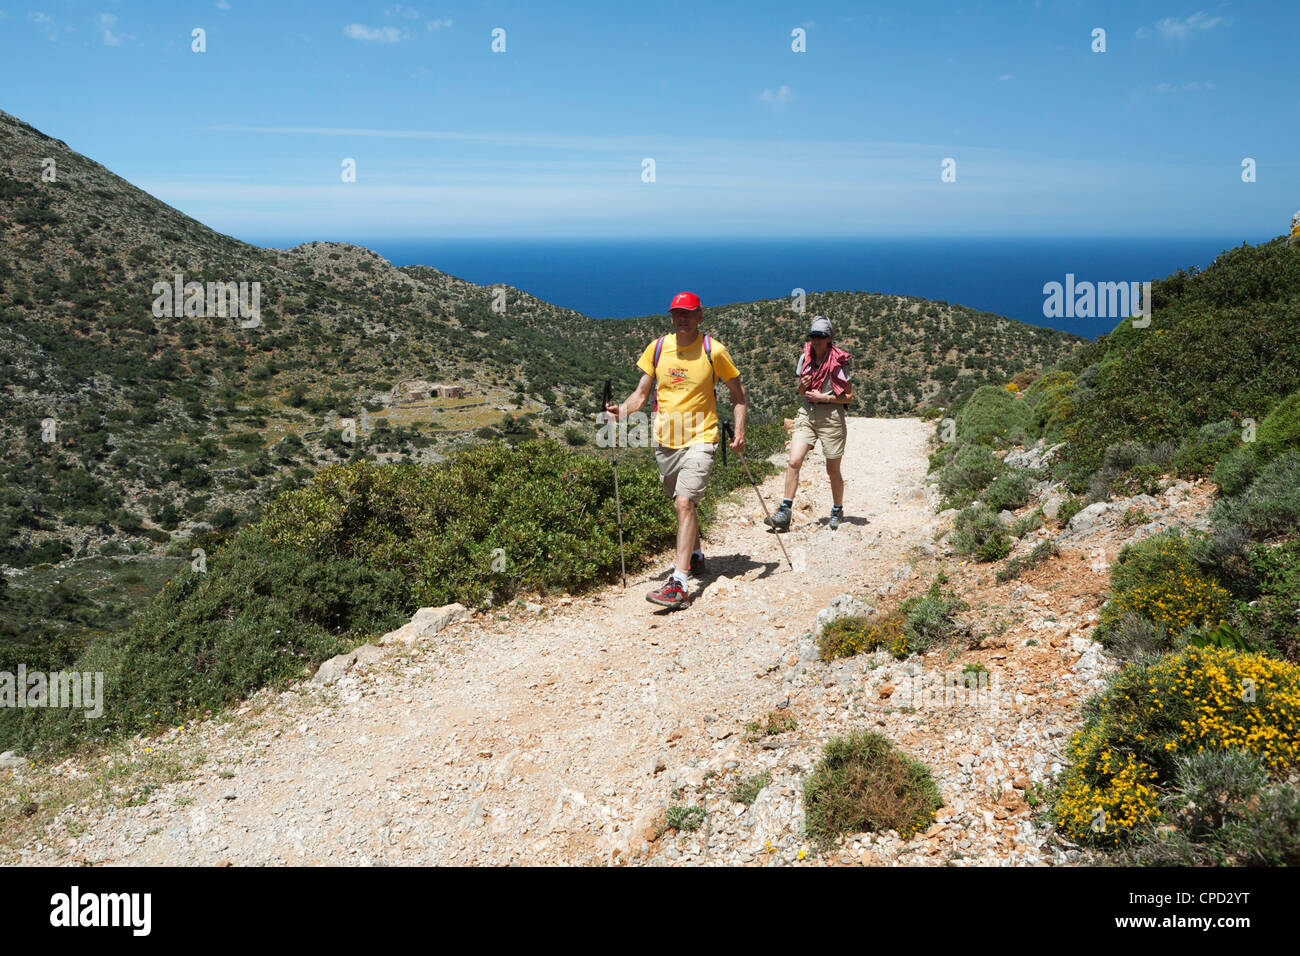 Les promeneurs sur promenade côtière, péninsule d'Akrotiri, Chania, Crète, région des îles grecques, Grèce, Europe Banque D'Images